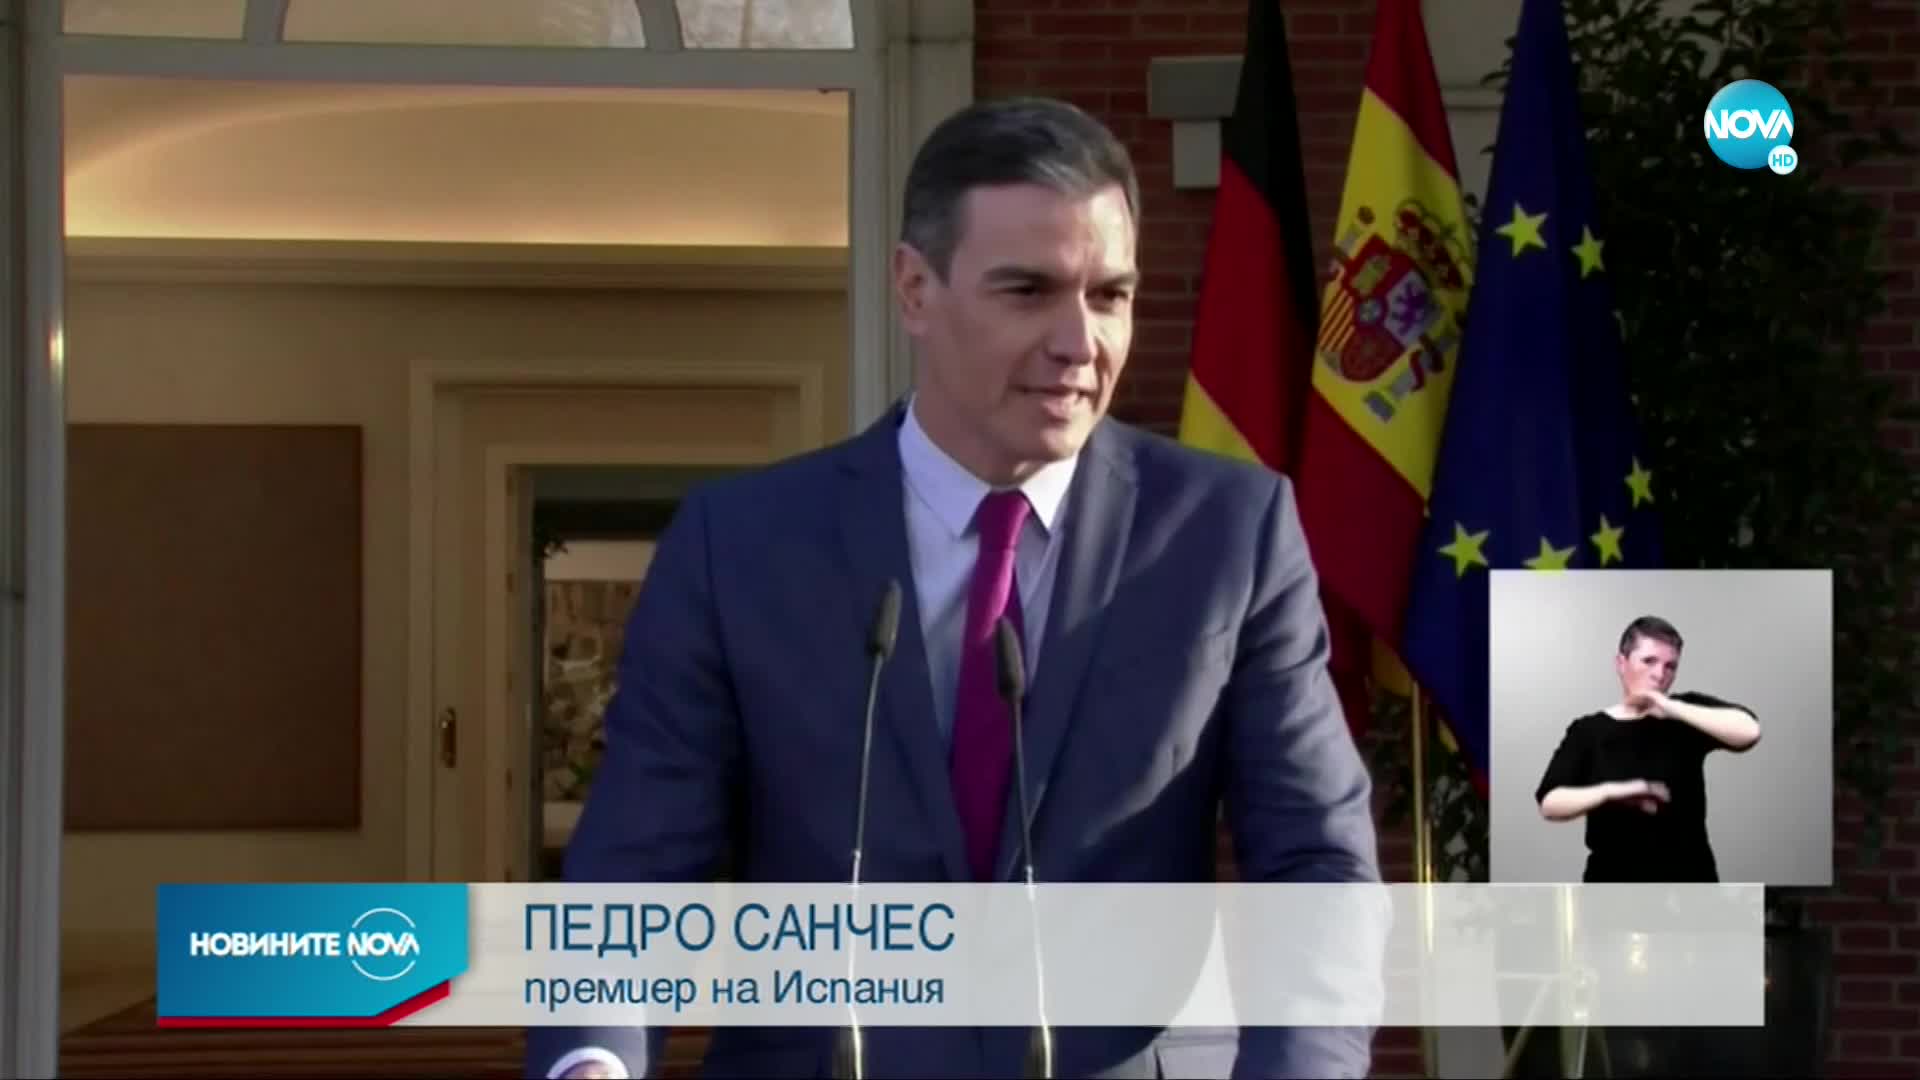 Испанският премиер за Джокович: Който иска да играе в Испания, ще спазва правилата